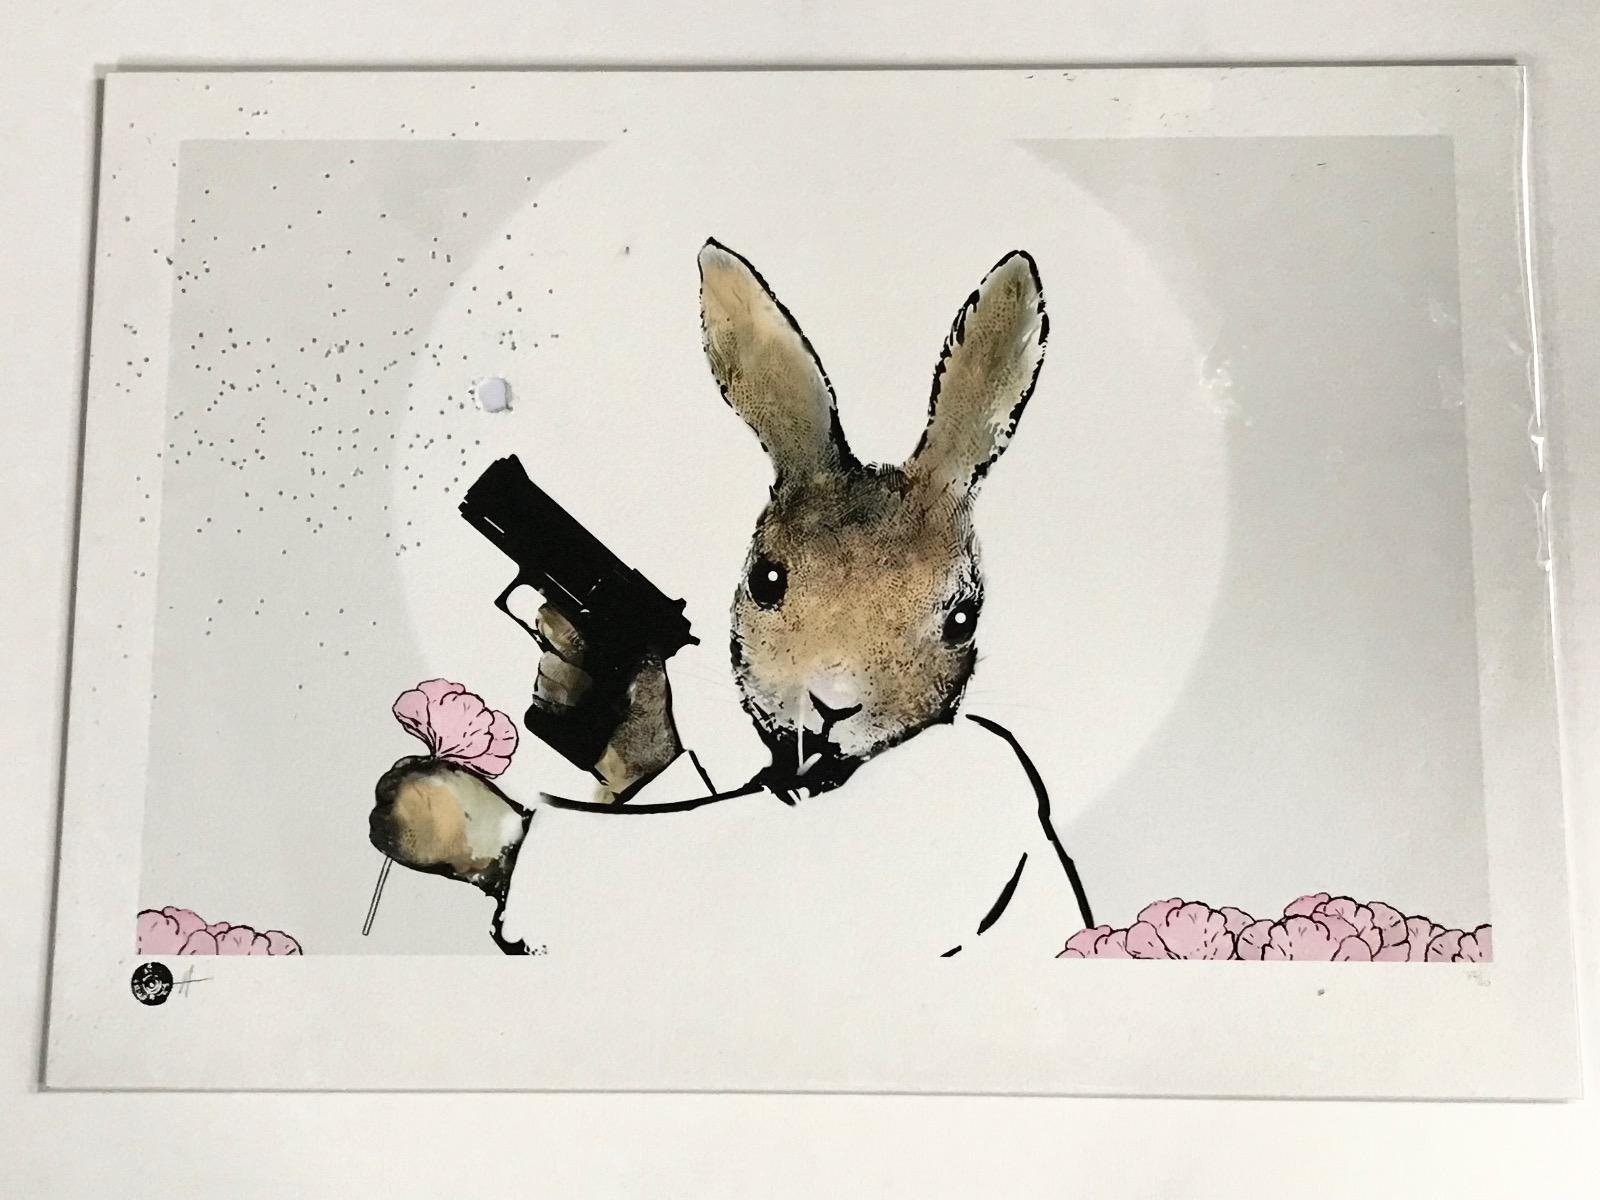 Rural Resistance Series - Home Guard de Harry Bunce se compose de tons roses et bruns qui représentent un lapin tenant un fusil et une fleur avec des coups de feu sur la feuille.

Informations complémentaires :
Technique mixte (impression d'archives